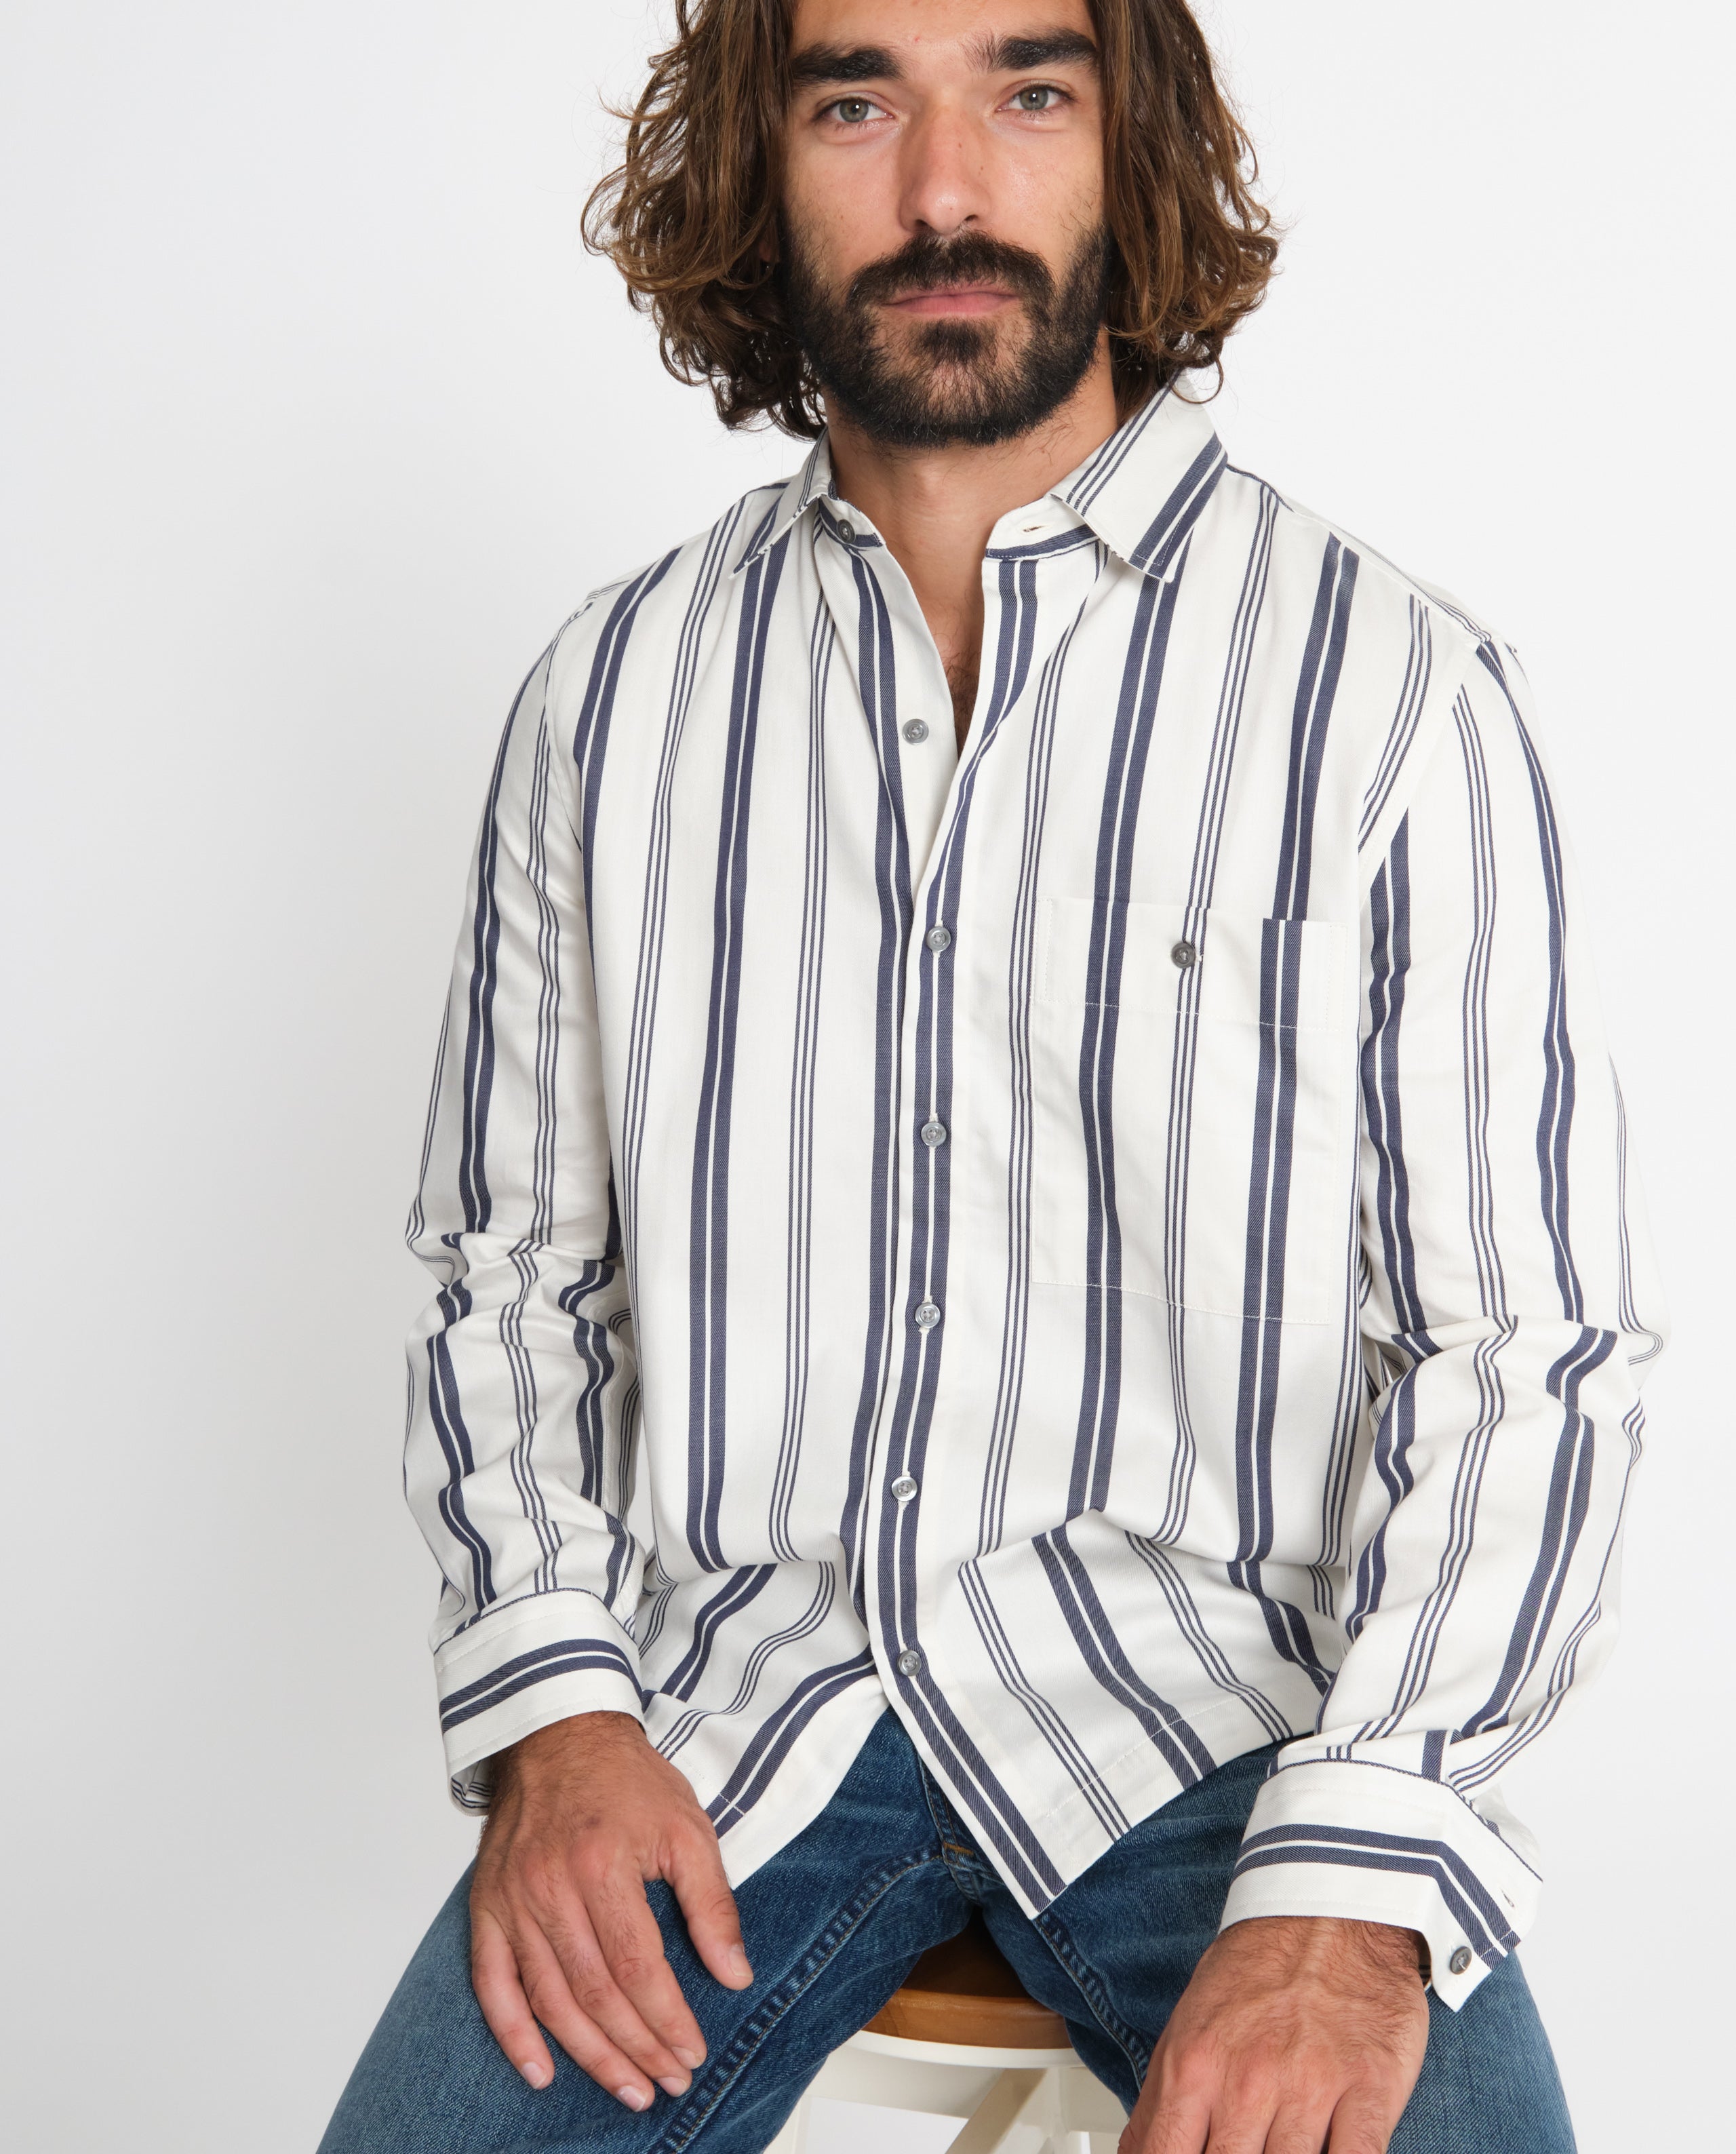 marché commun noyoco chemise coton biologique rayures bleu blanc